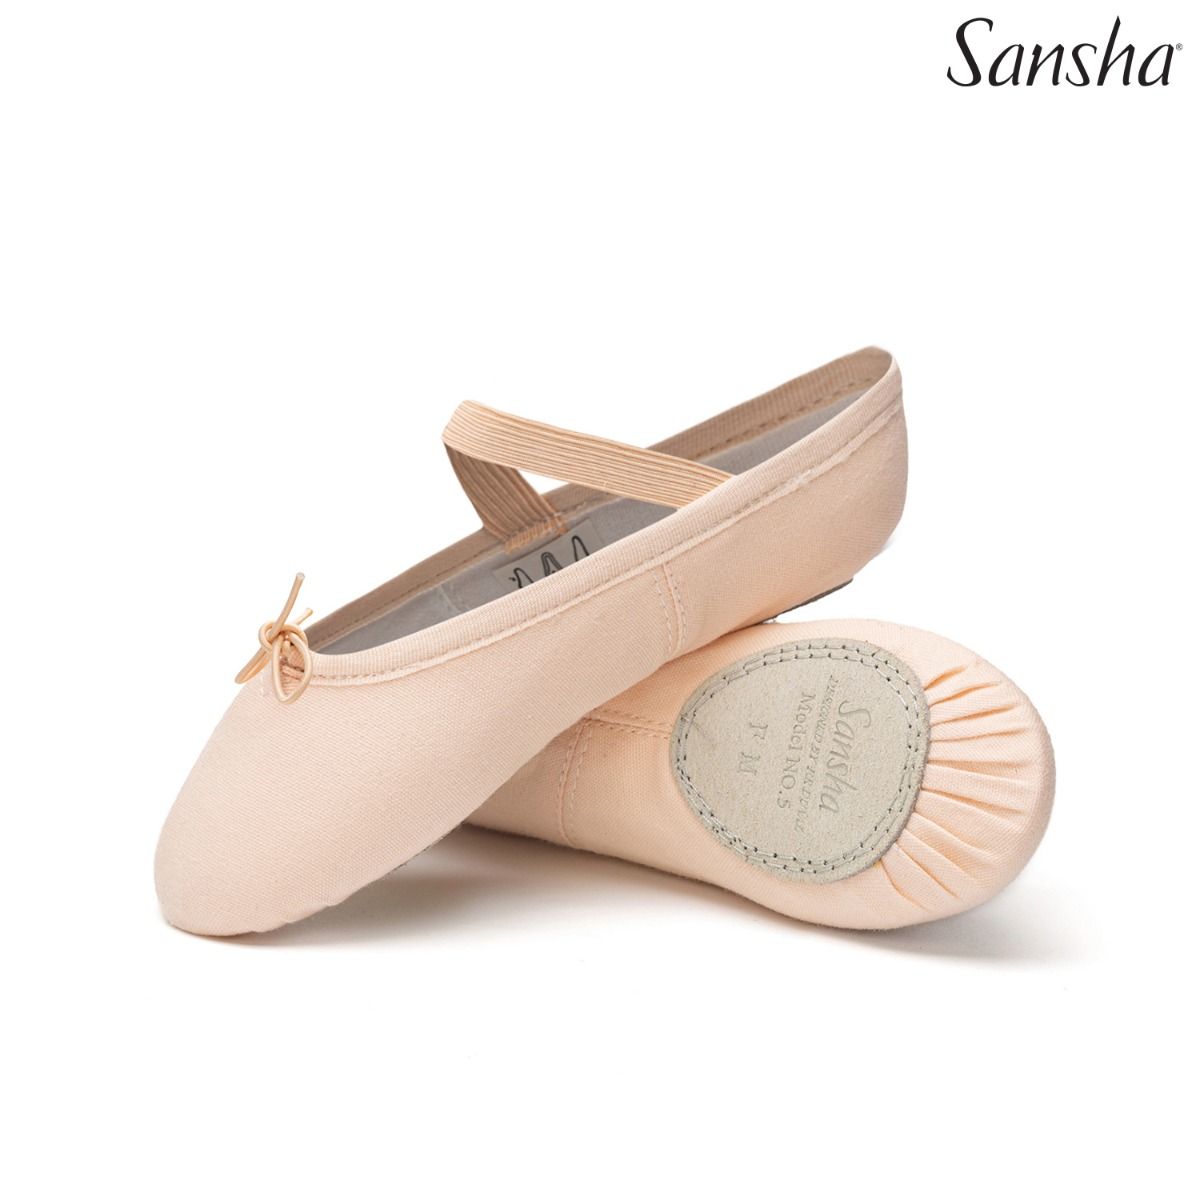 Baletki dziecięce Sansha model Tutu-split